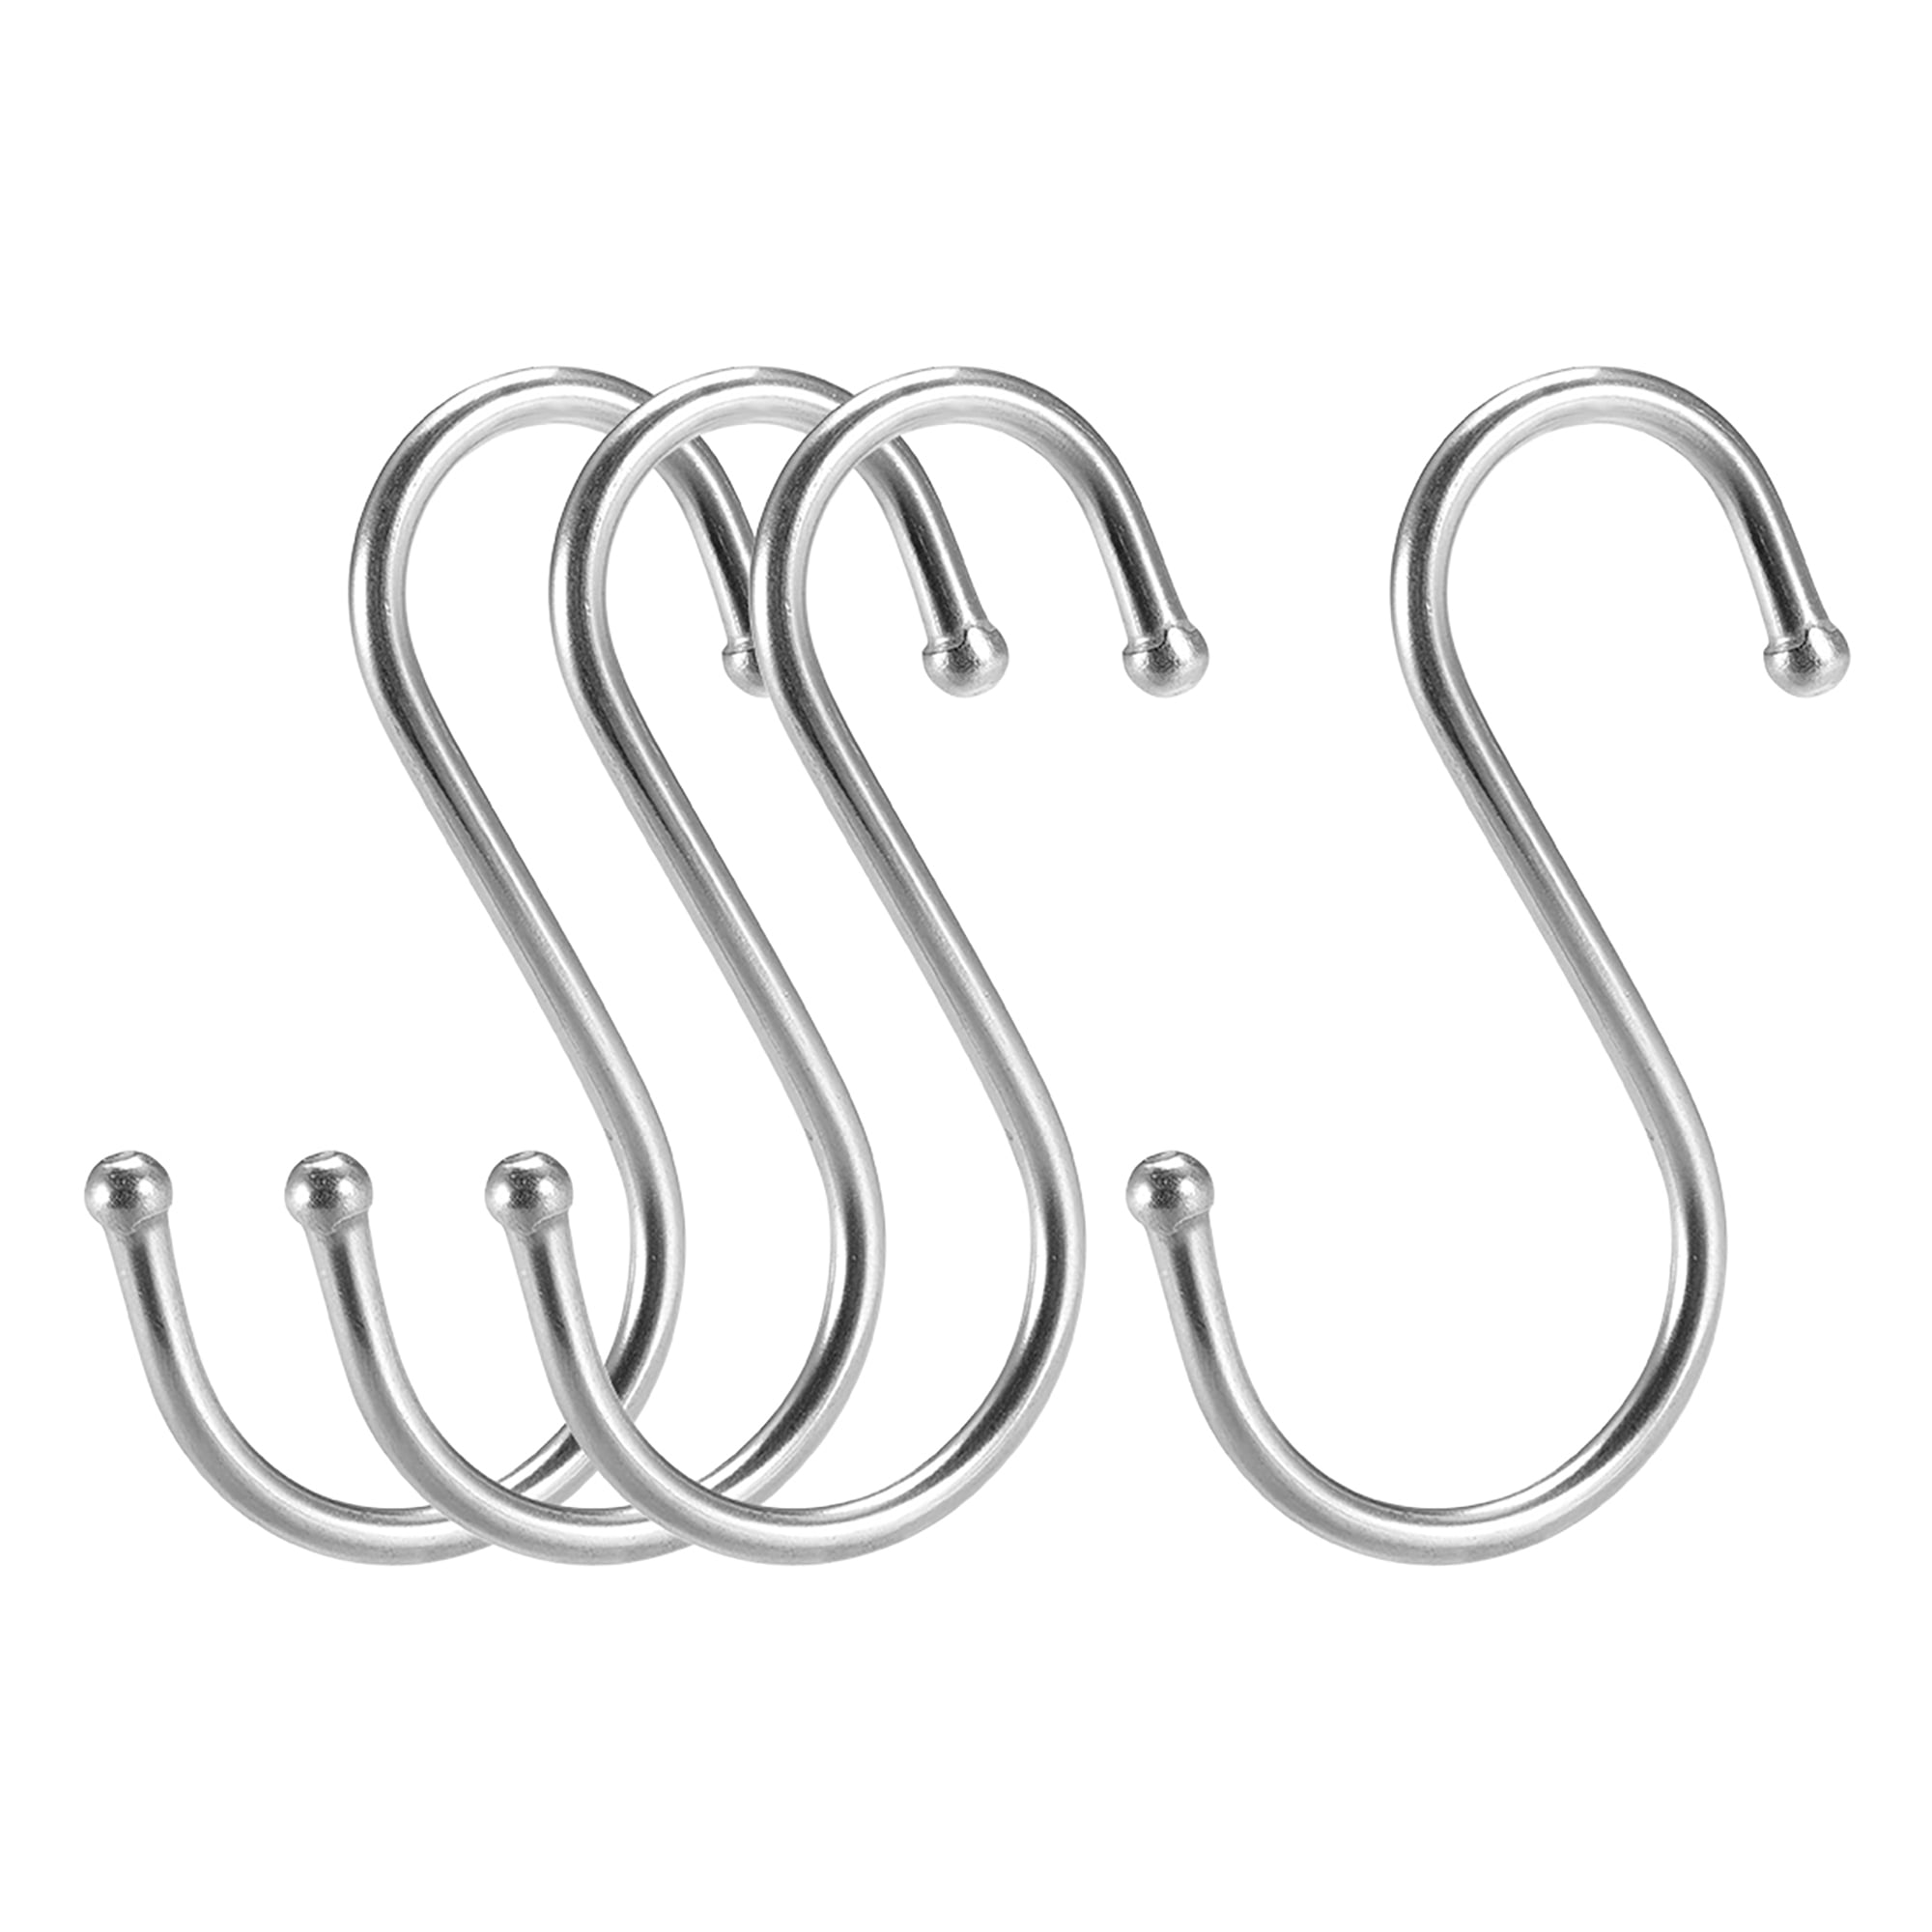 Premium S Hooks S Shaped hook Heavy Duty Stainless Steel Hanger Hooks